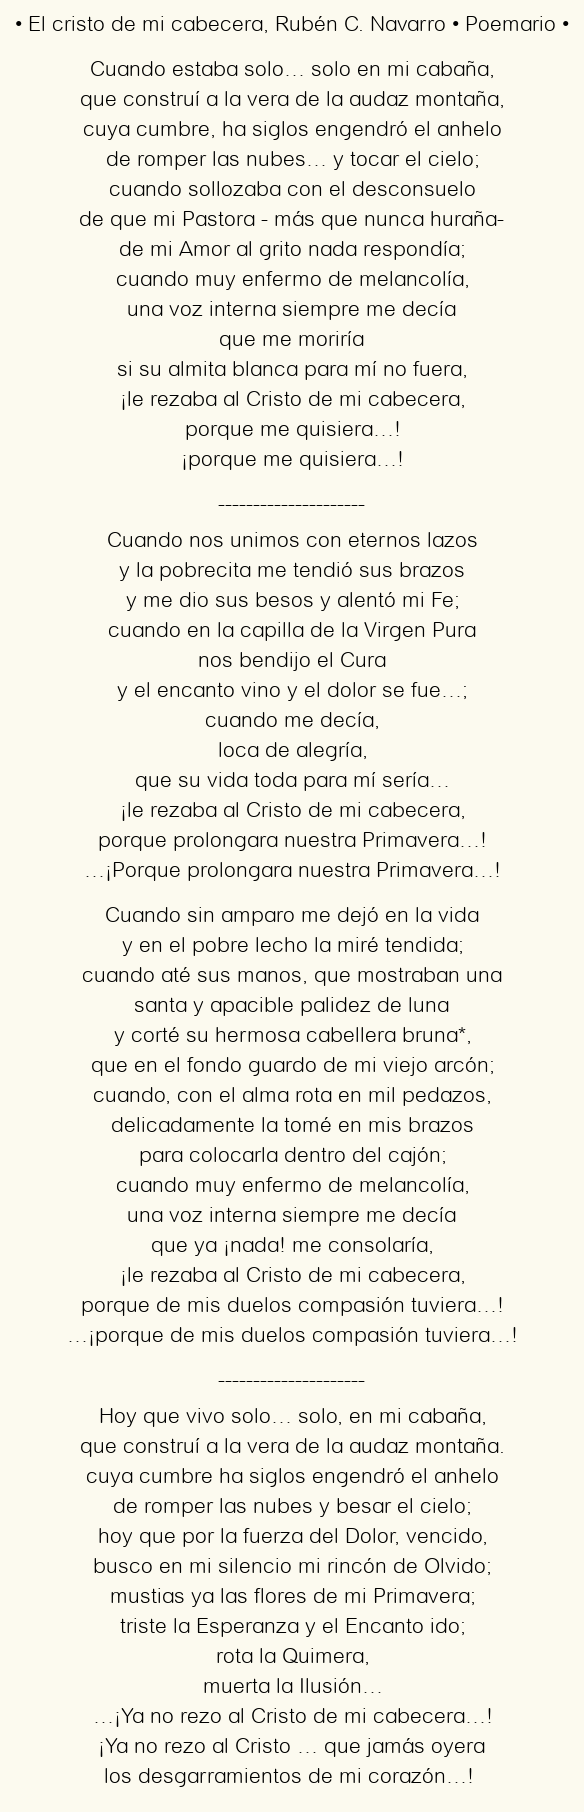 Imagen con el poema El cristo de mi cabecera, por Rubén C. Navarro